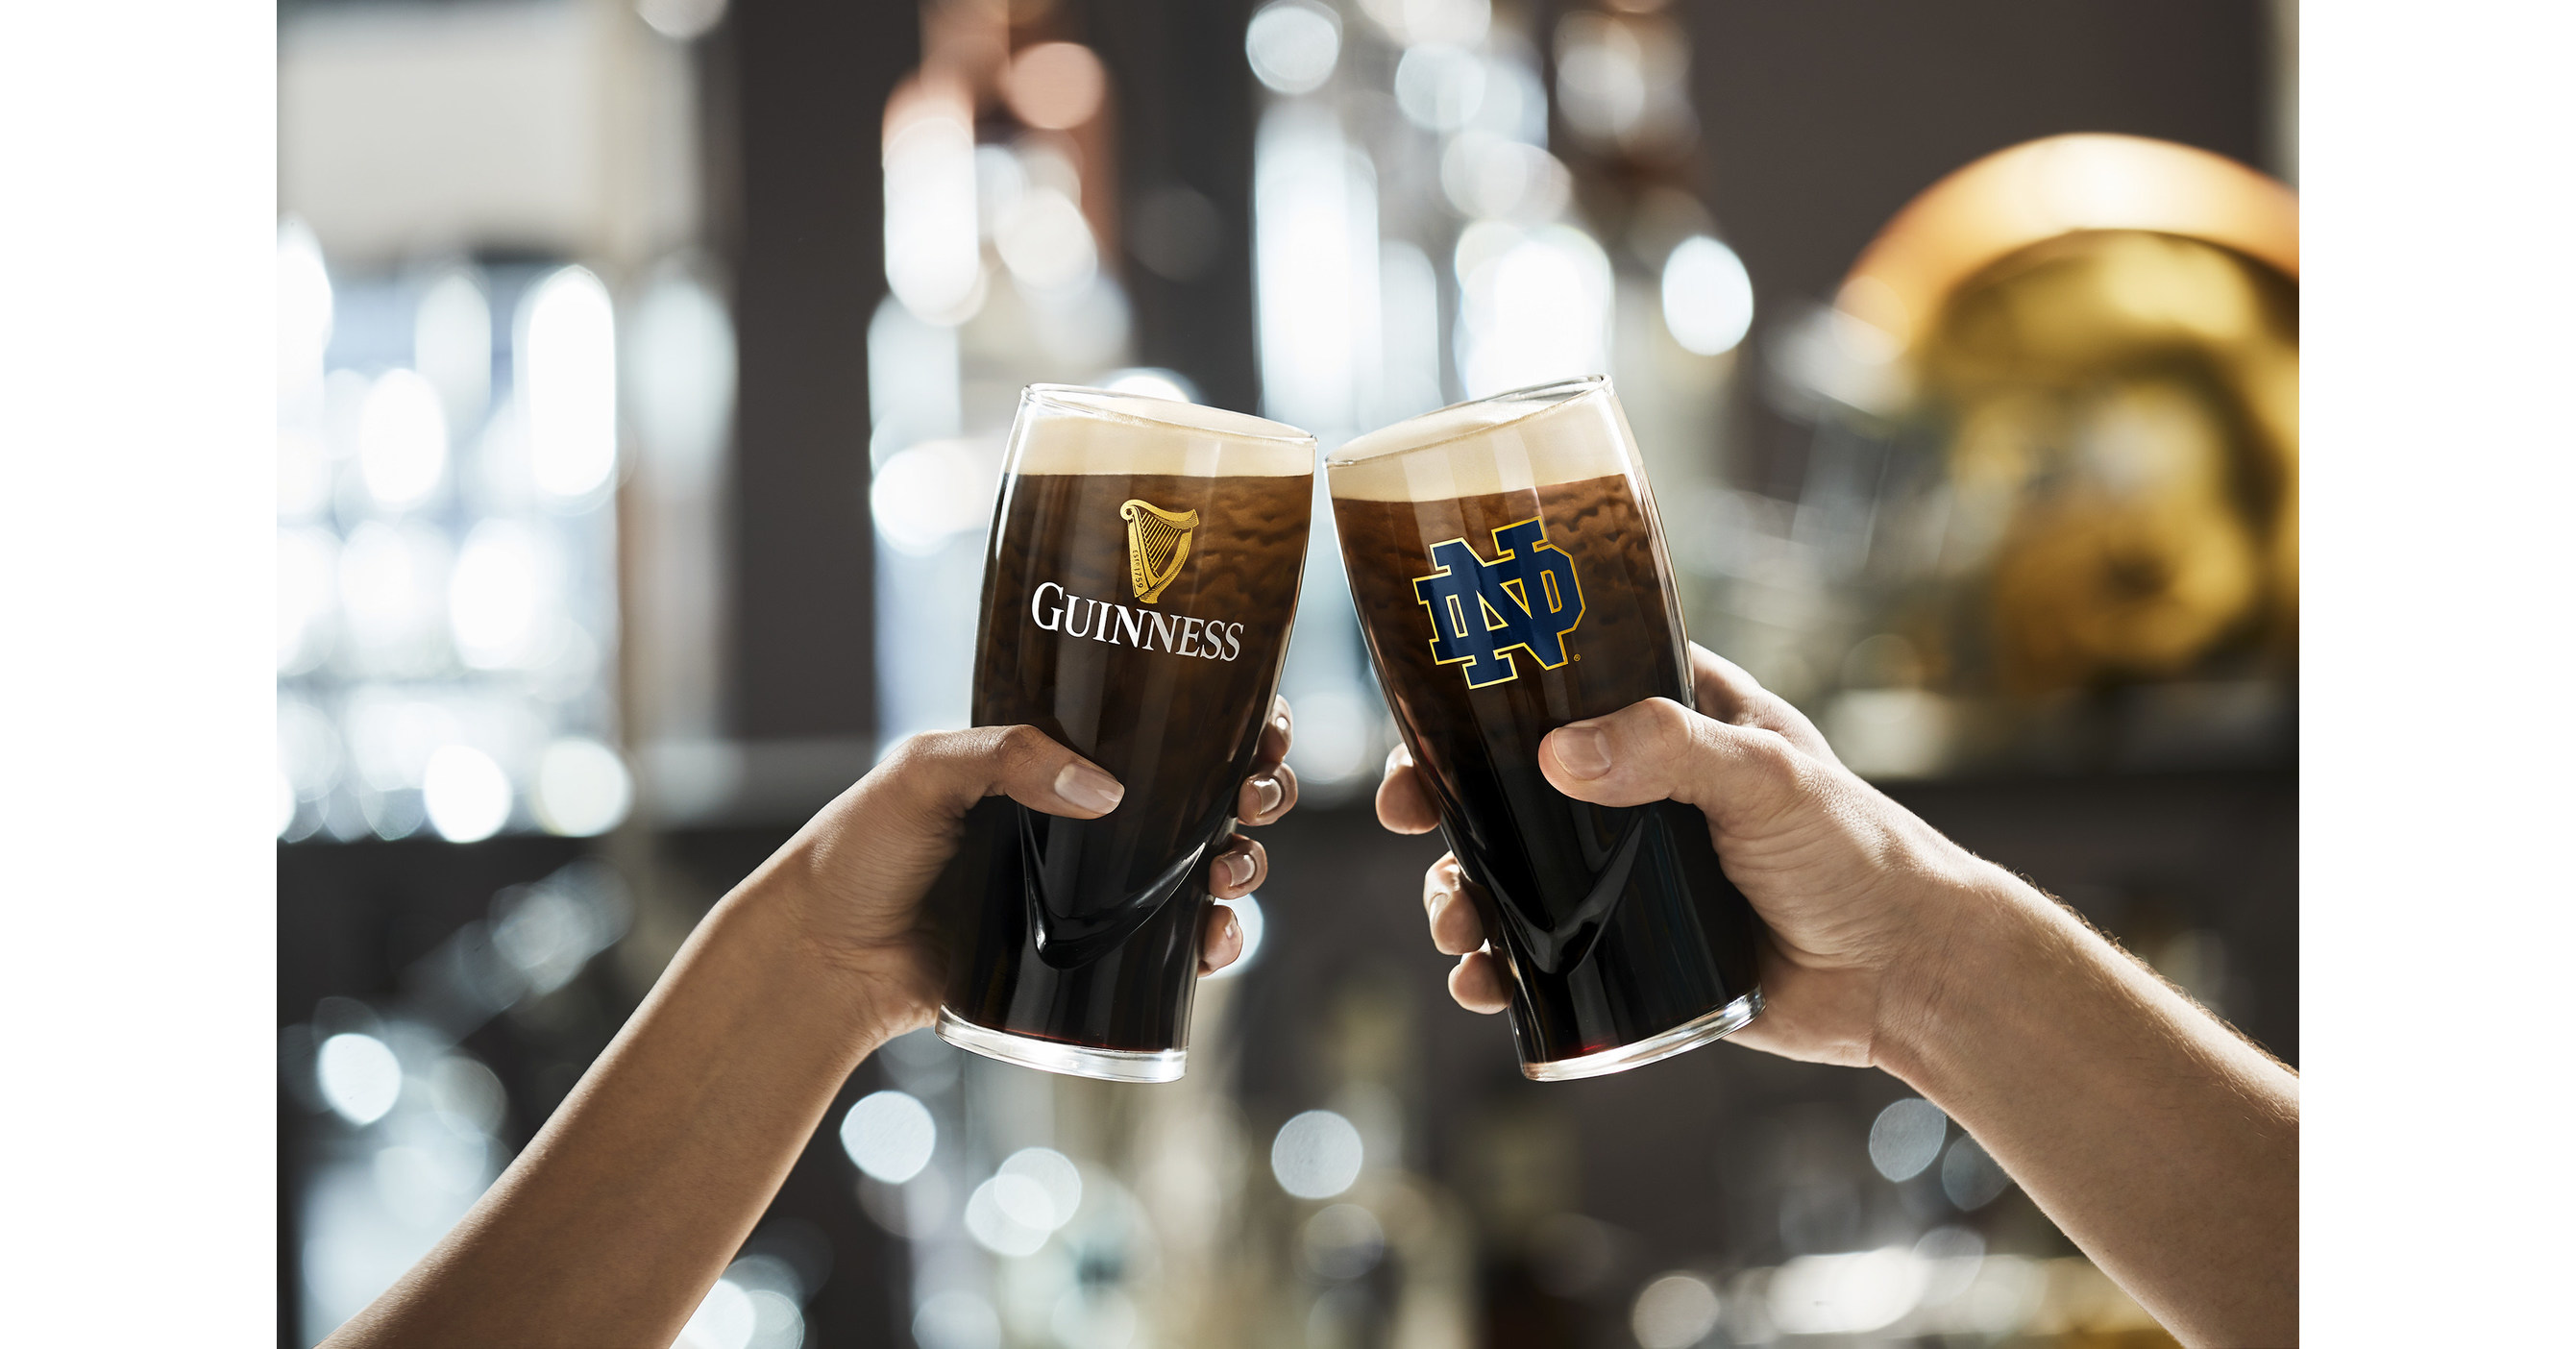 Guinness | Embossed Irish Pint Glass 4 Pack